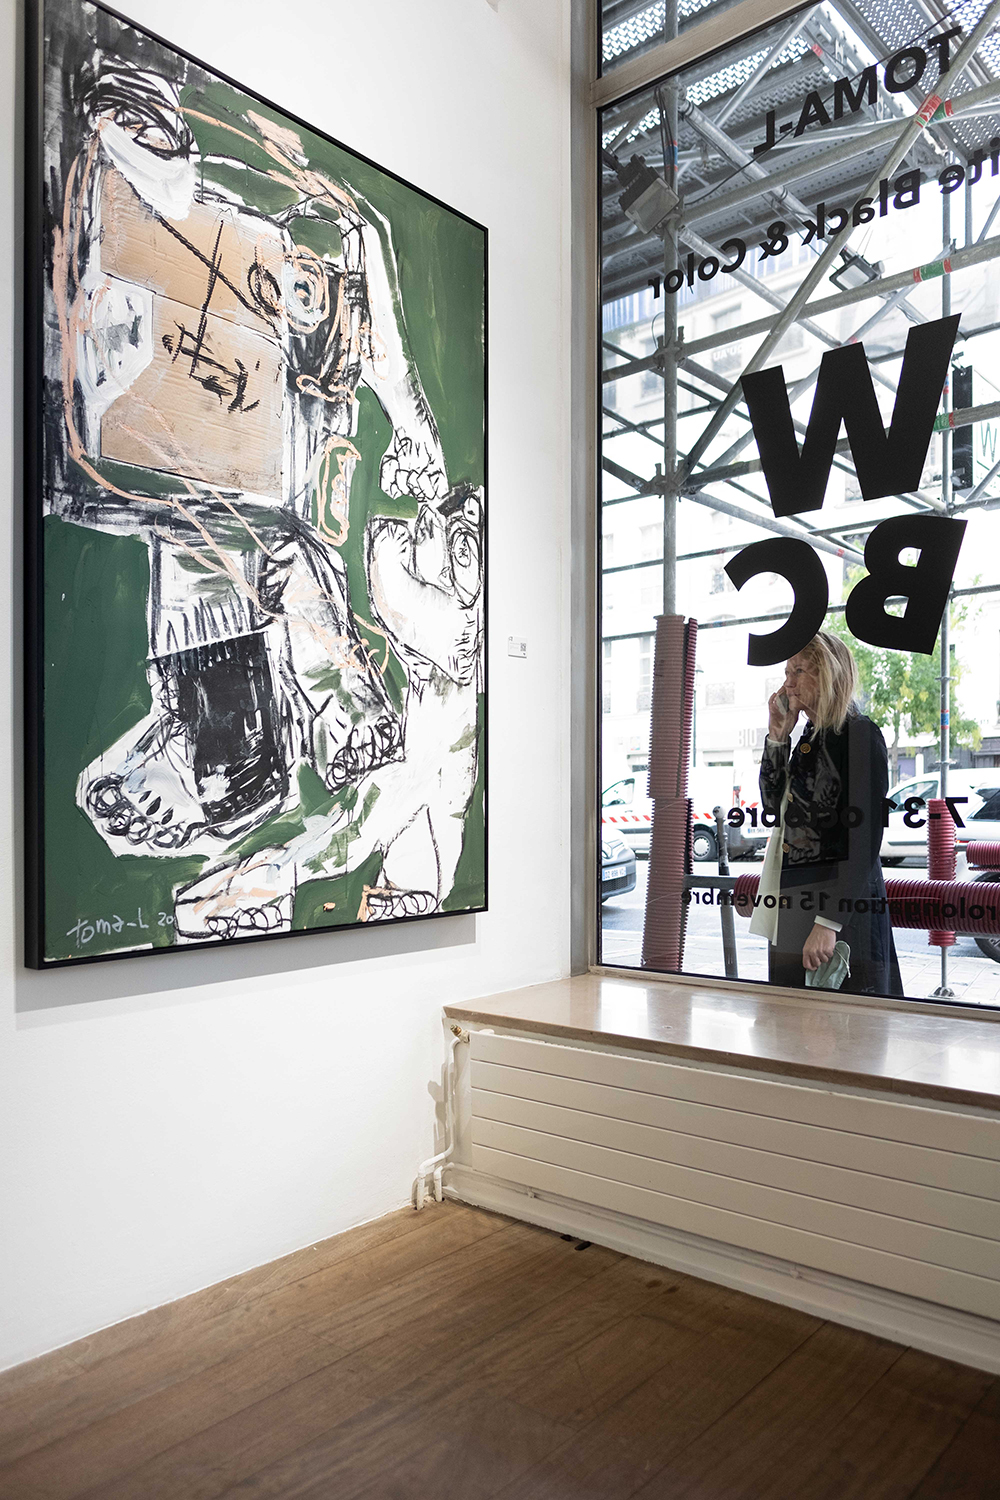 WBC | Exposition Toma-L à la Galerie W PARIS White Green & Trash Men
Technique mixte sur toile
180x120cm 
© Toma-L 2020